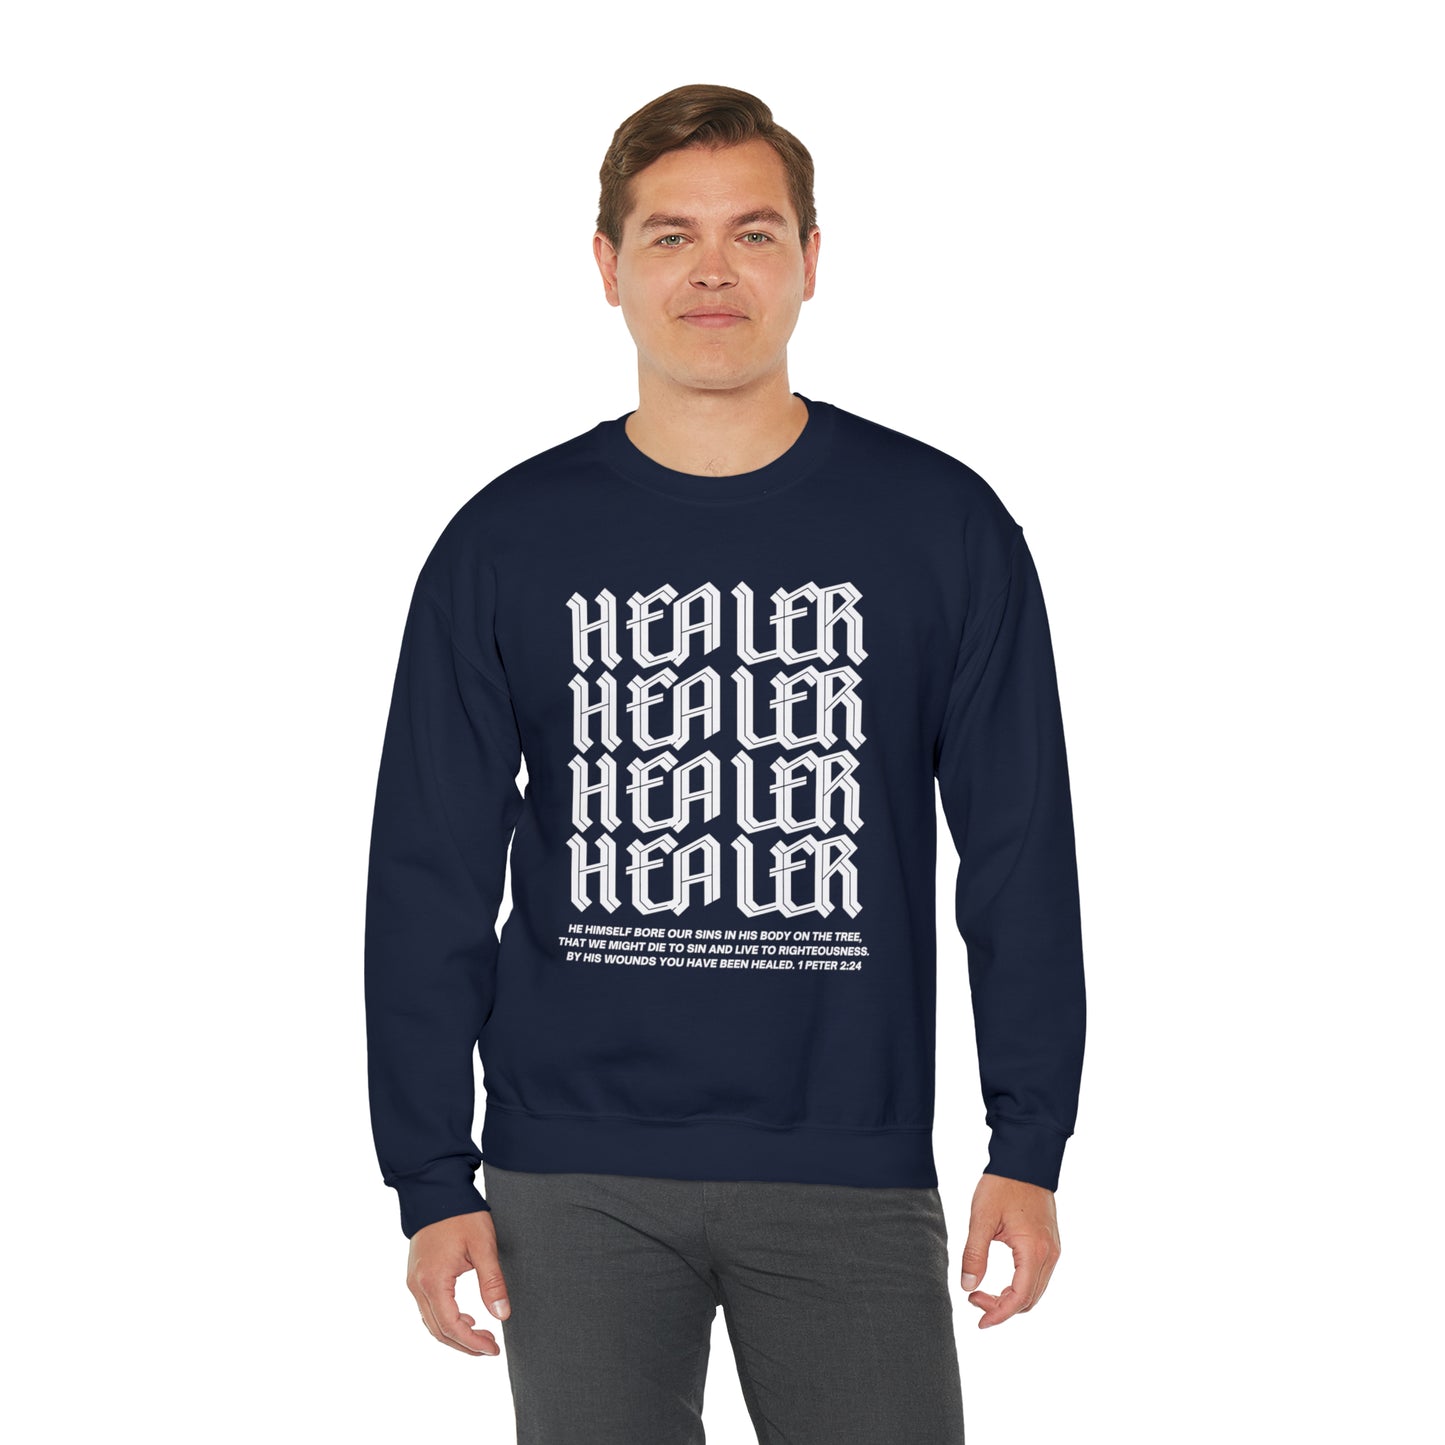 "Healer" Crewneck Sweatshirt